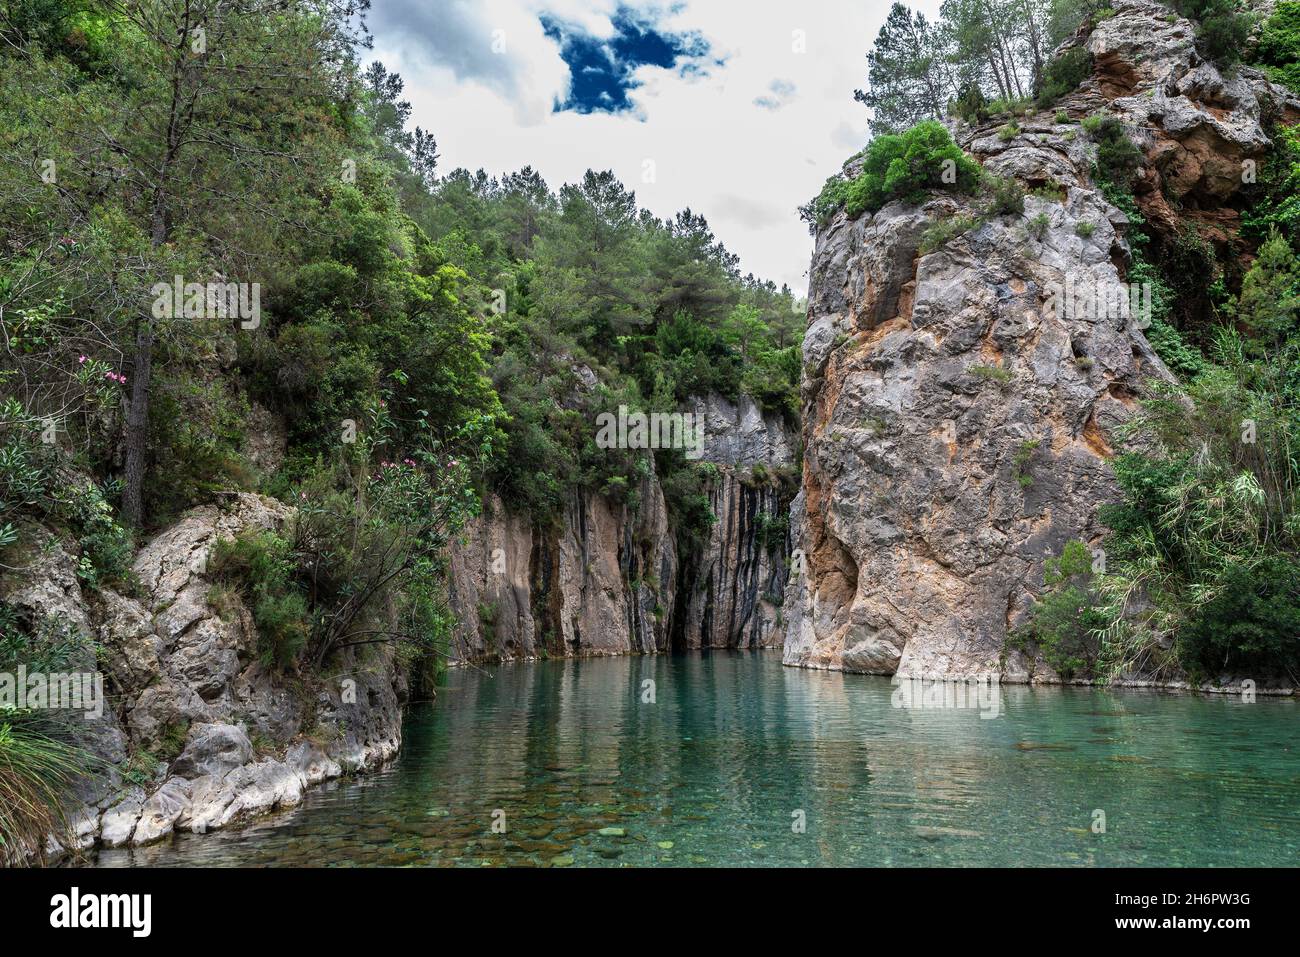 Fuente de los Baños, fountain of thermal waters in Mijares river in Montanejos, Castellon, Land of Valencia, Spain Stock Photo